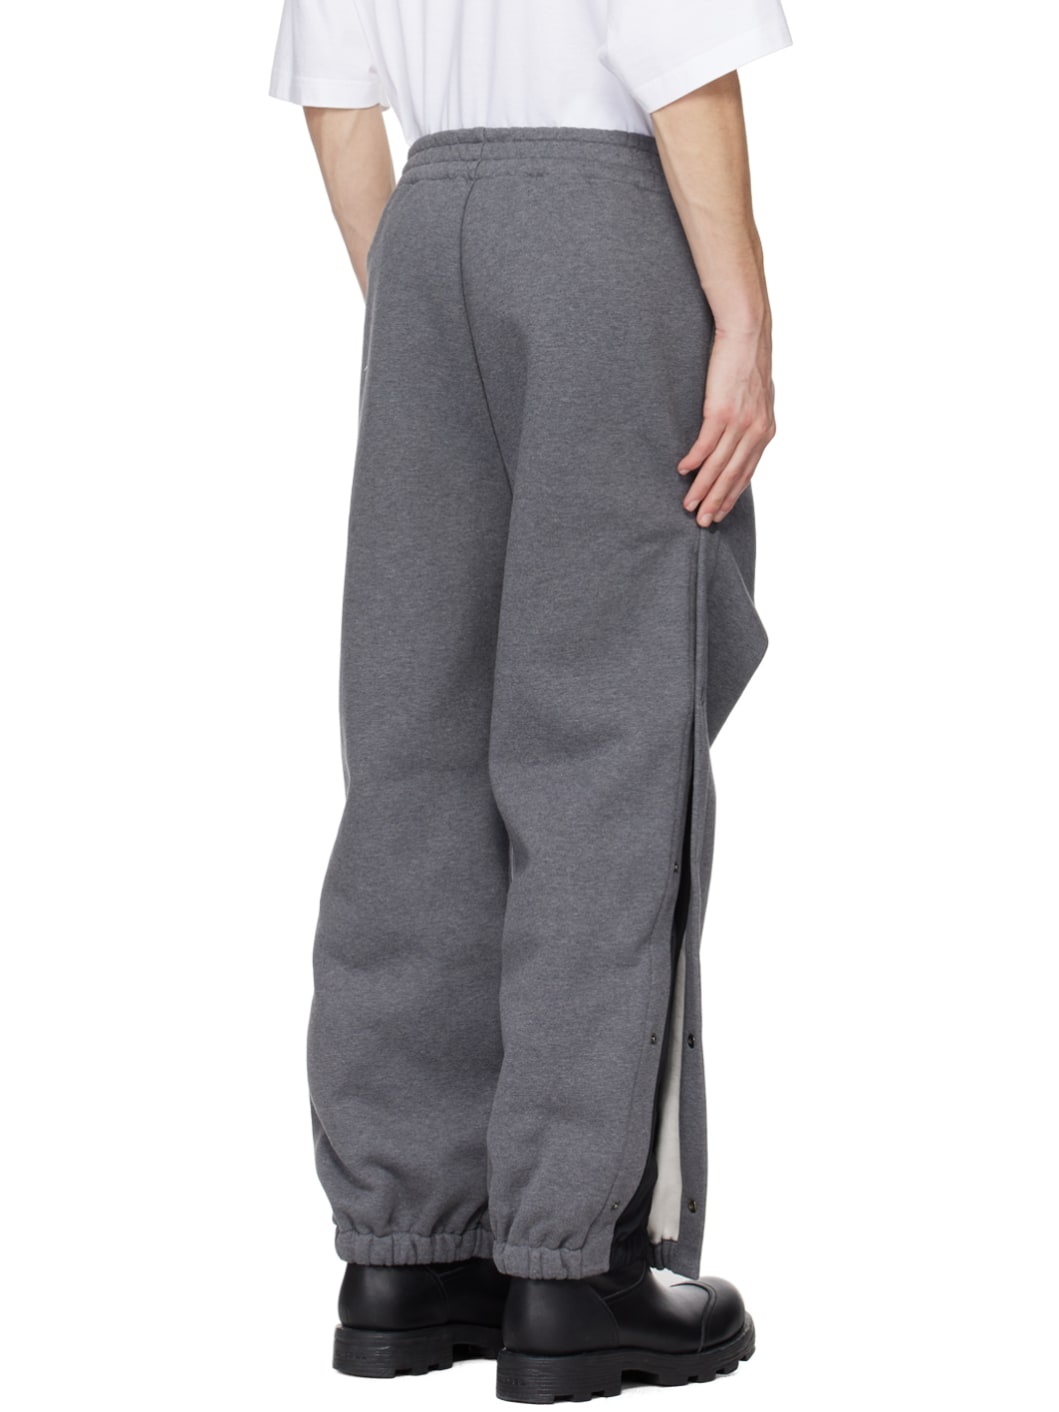 Gray Layered Sweatpants - 3